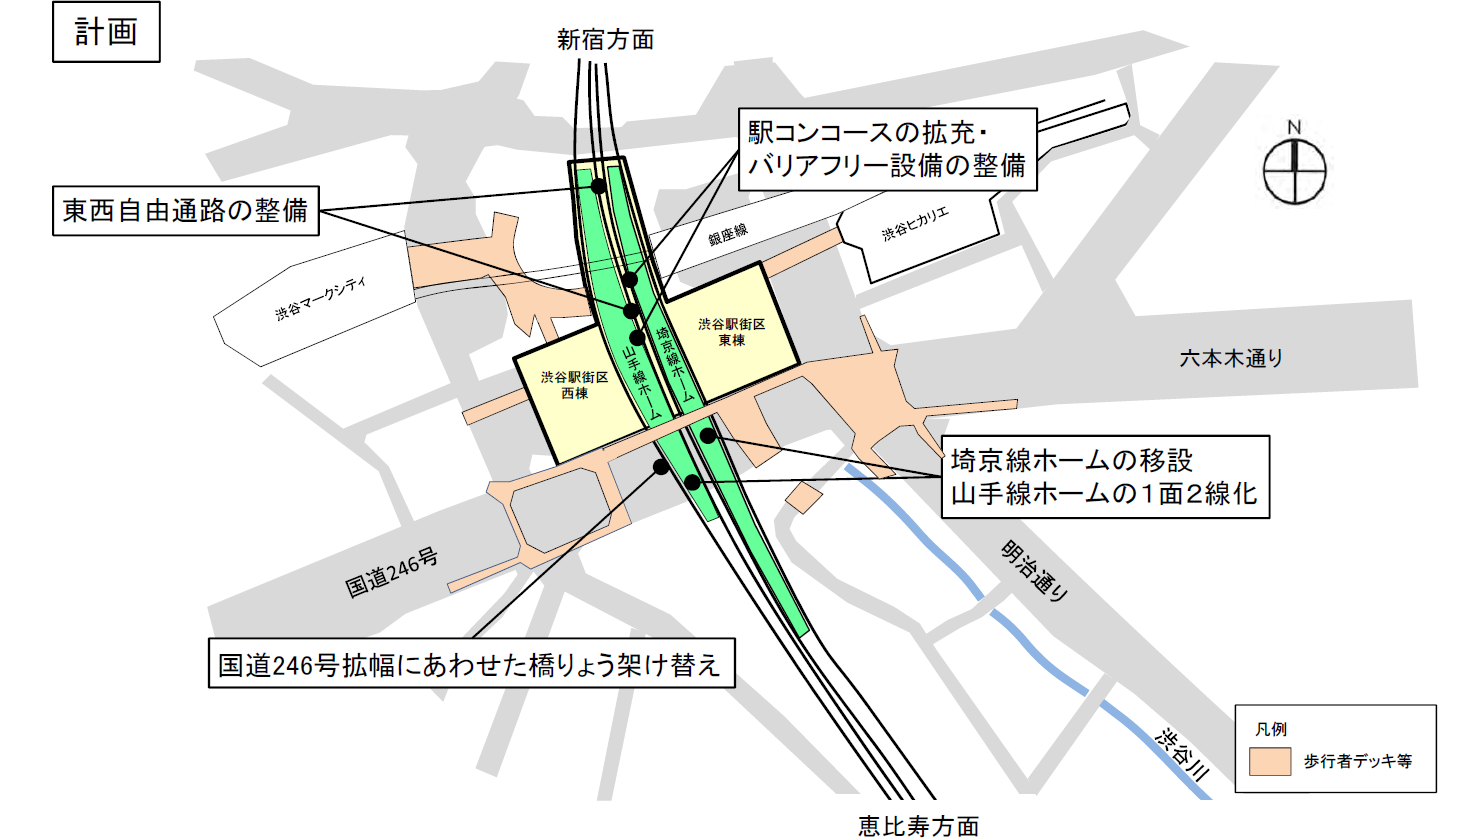 工事完了後の渋谷駅のイメージ